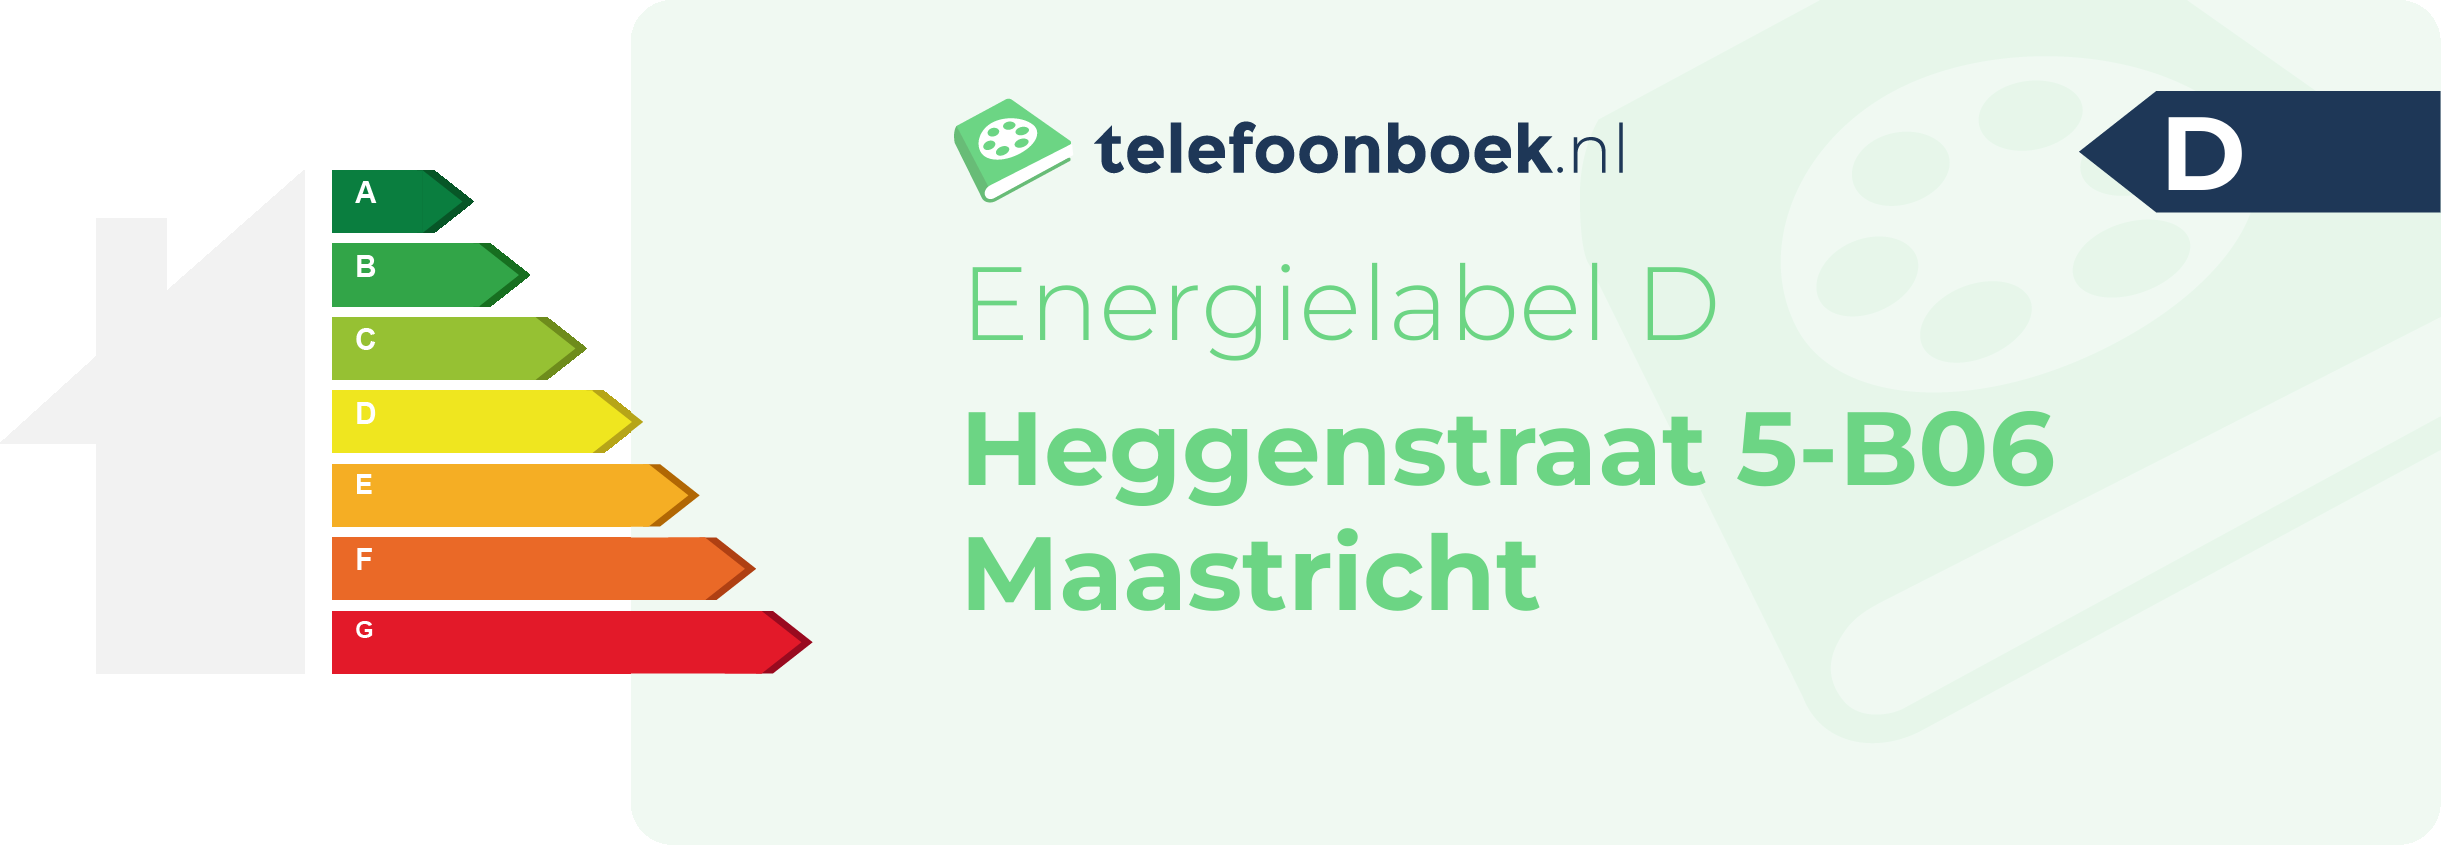 Energielabel Heggenstraat 5-B06 Maastricht